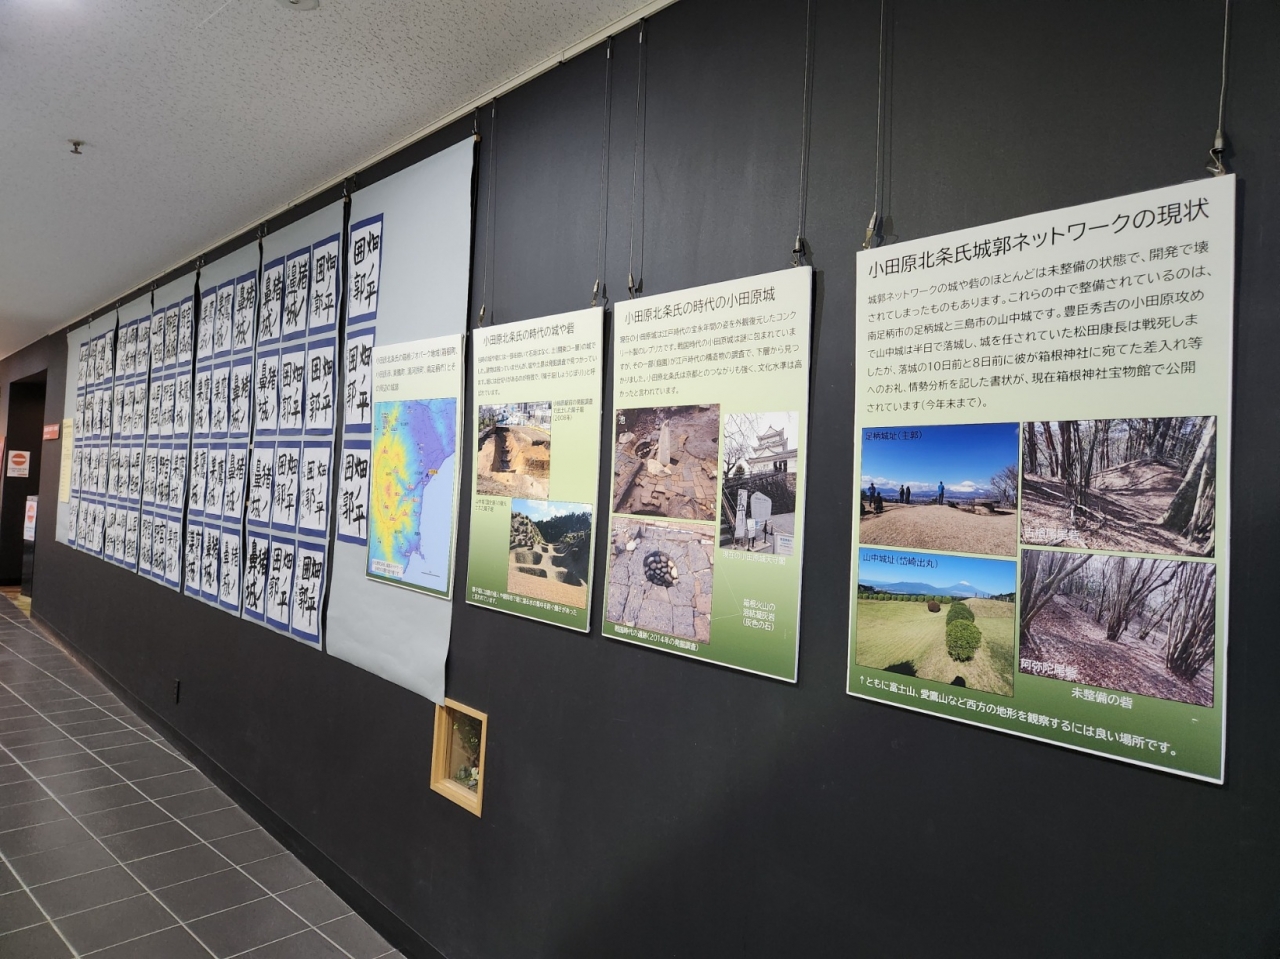 箱根ジオミュージアムで函嶺白百合学園 箱根ジオパーク習字展を開催中